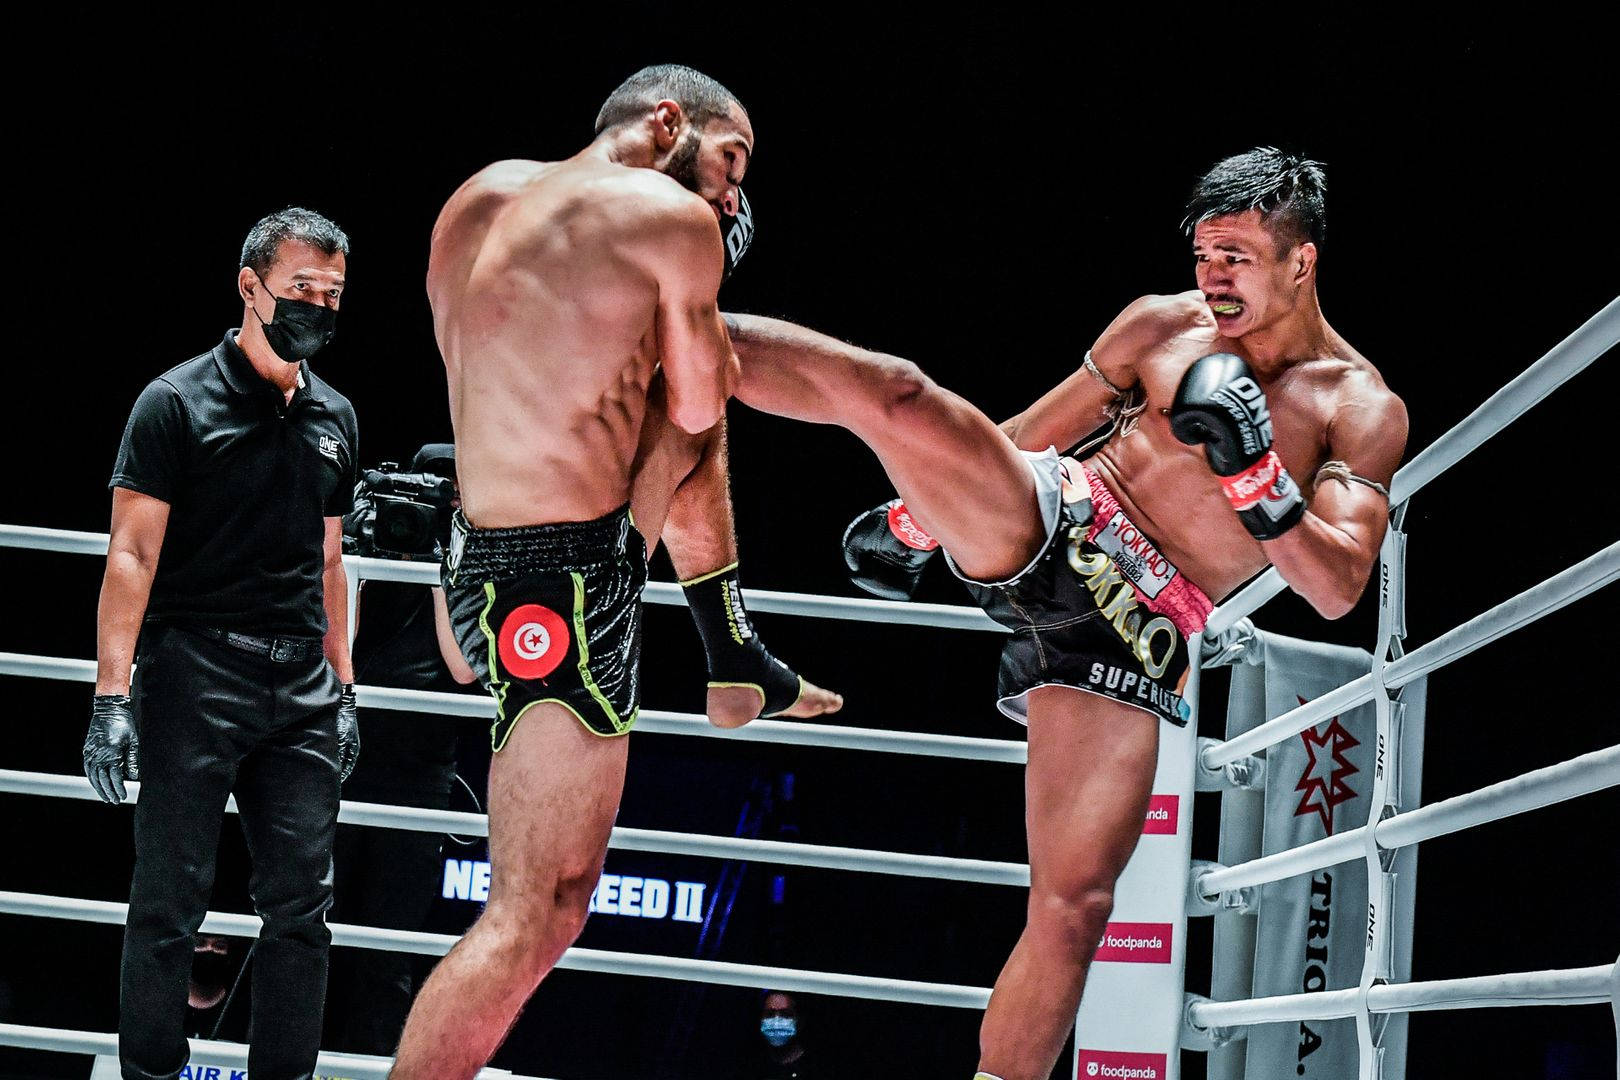 Superlekkiatmuu9 Gegen Fahdi Khaled Kickboxing-match Wallpaper